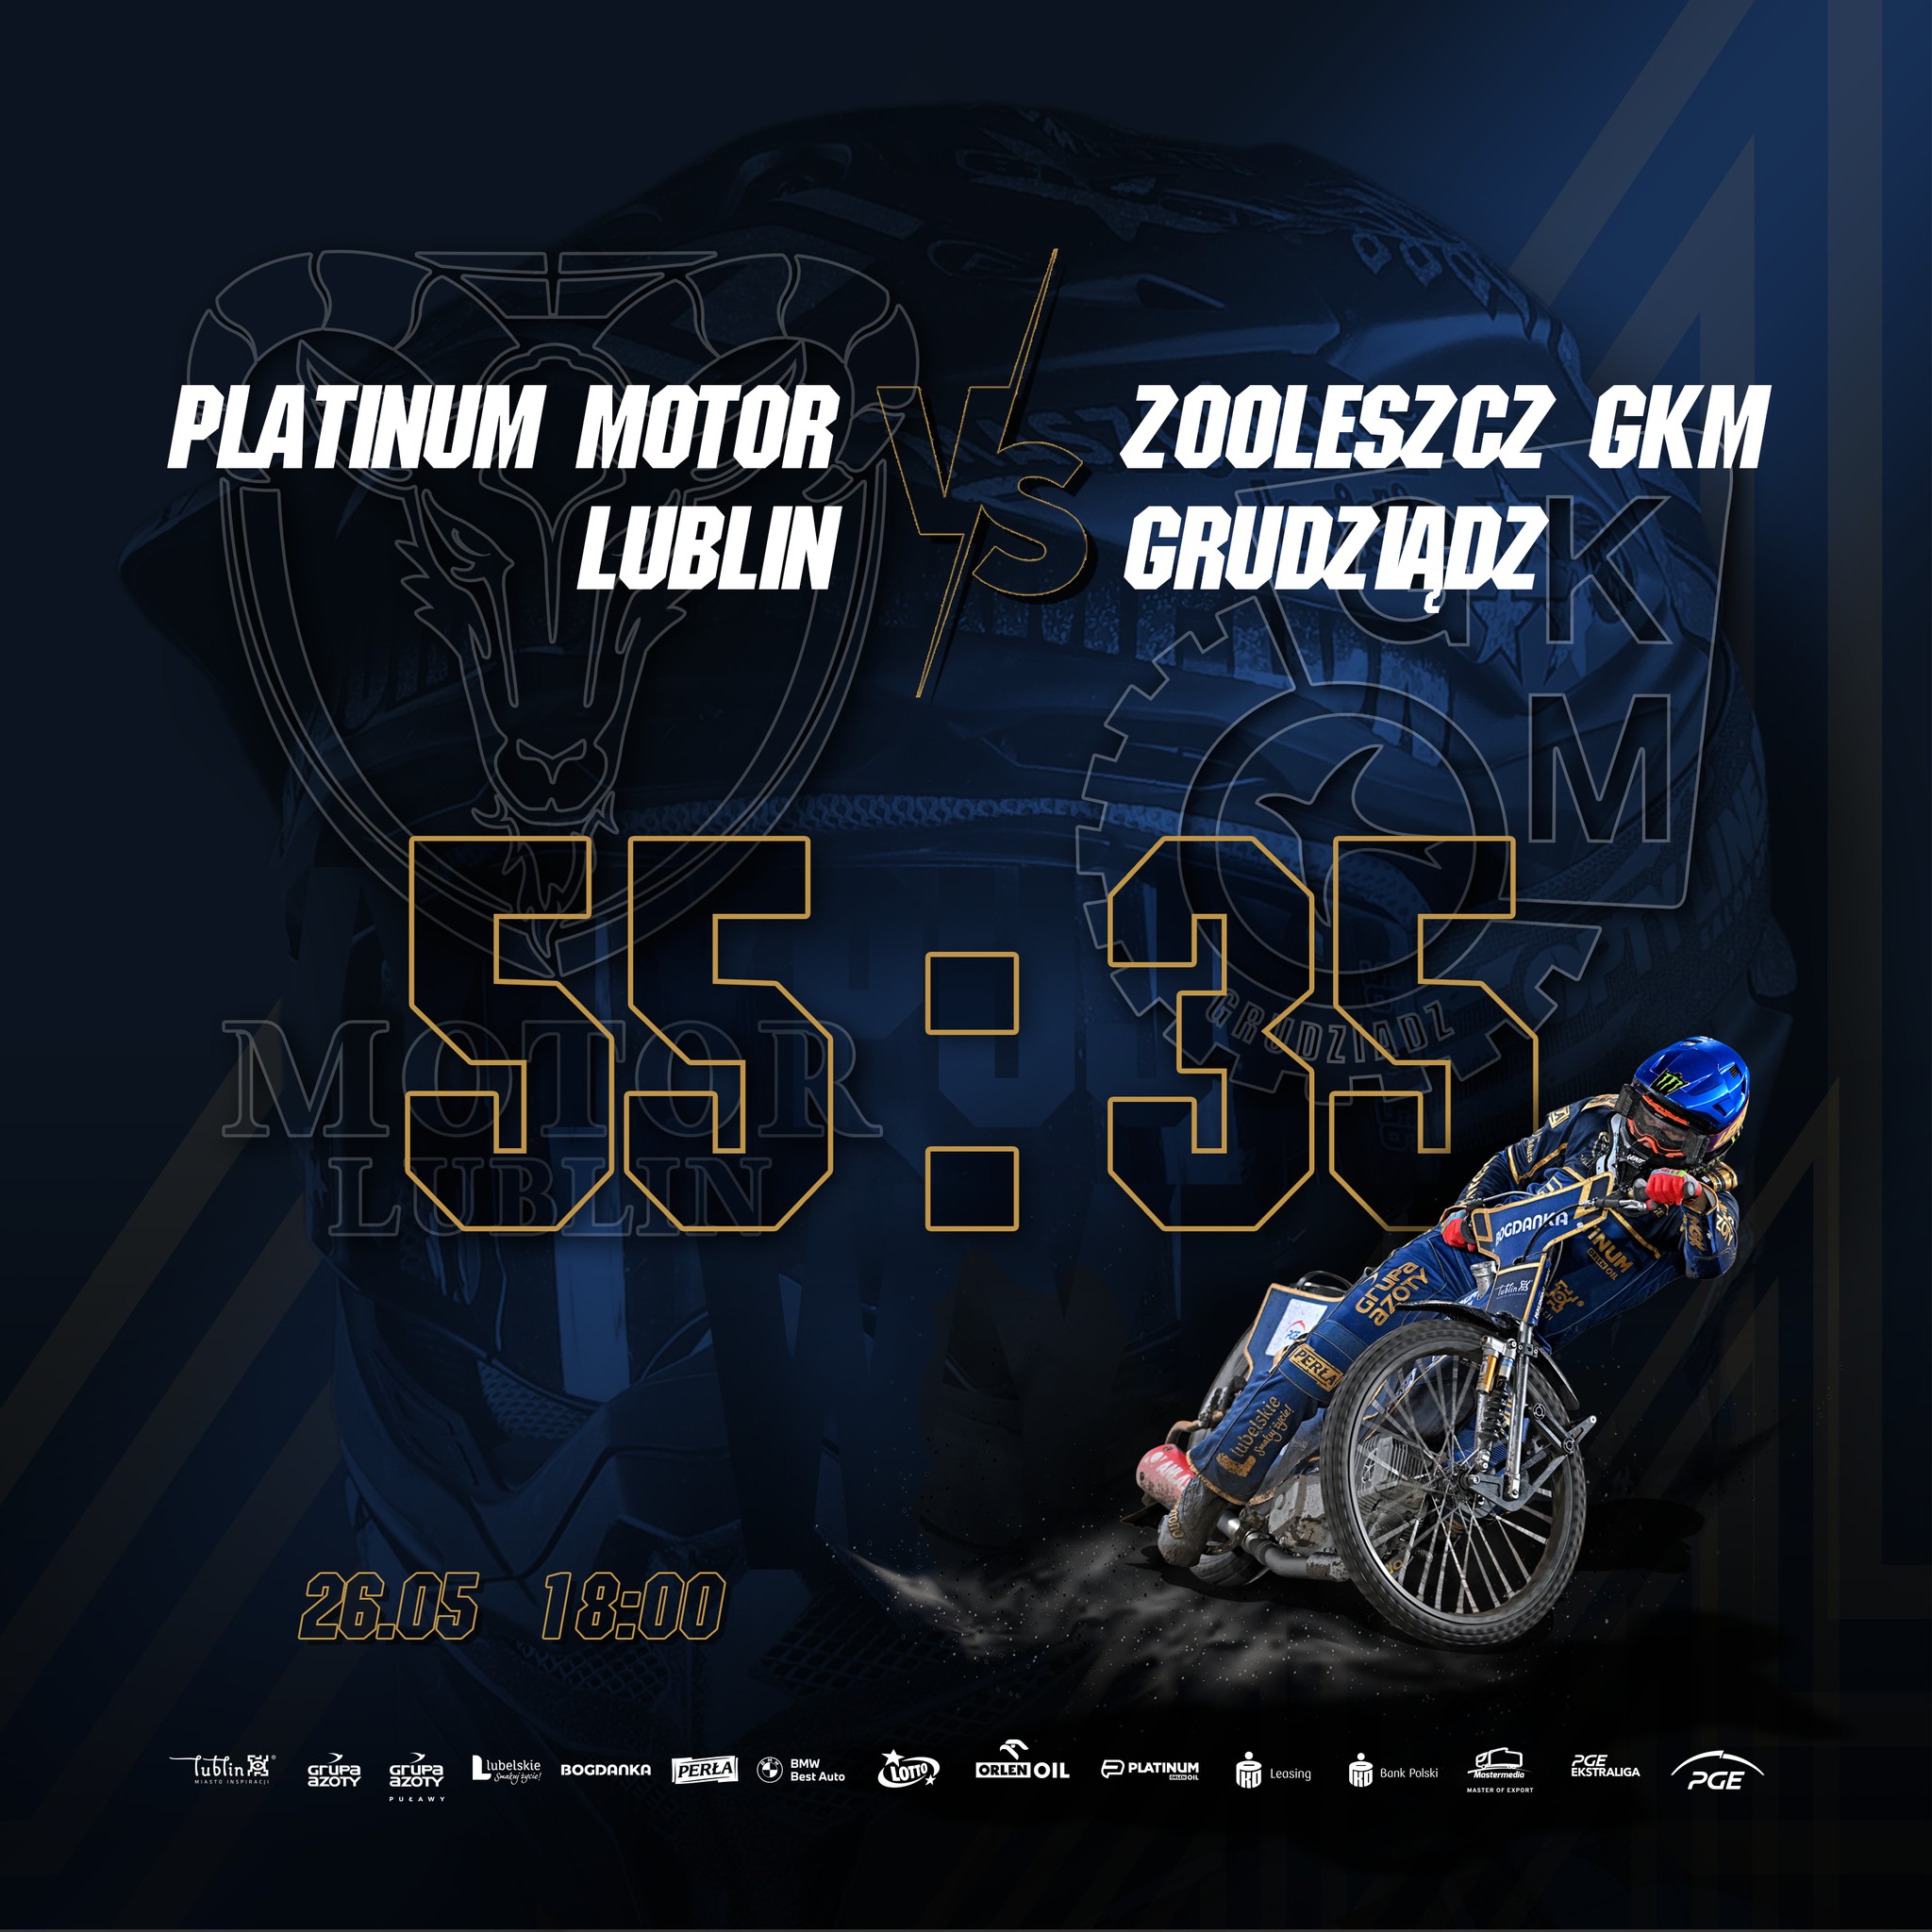 Platinum Motor Lublin - Zooleszcz GKM Grudziądz 55:35